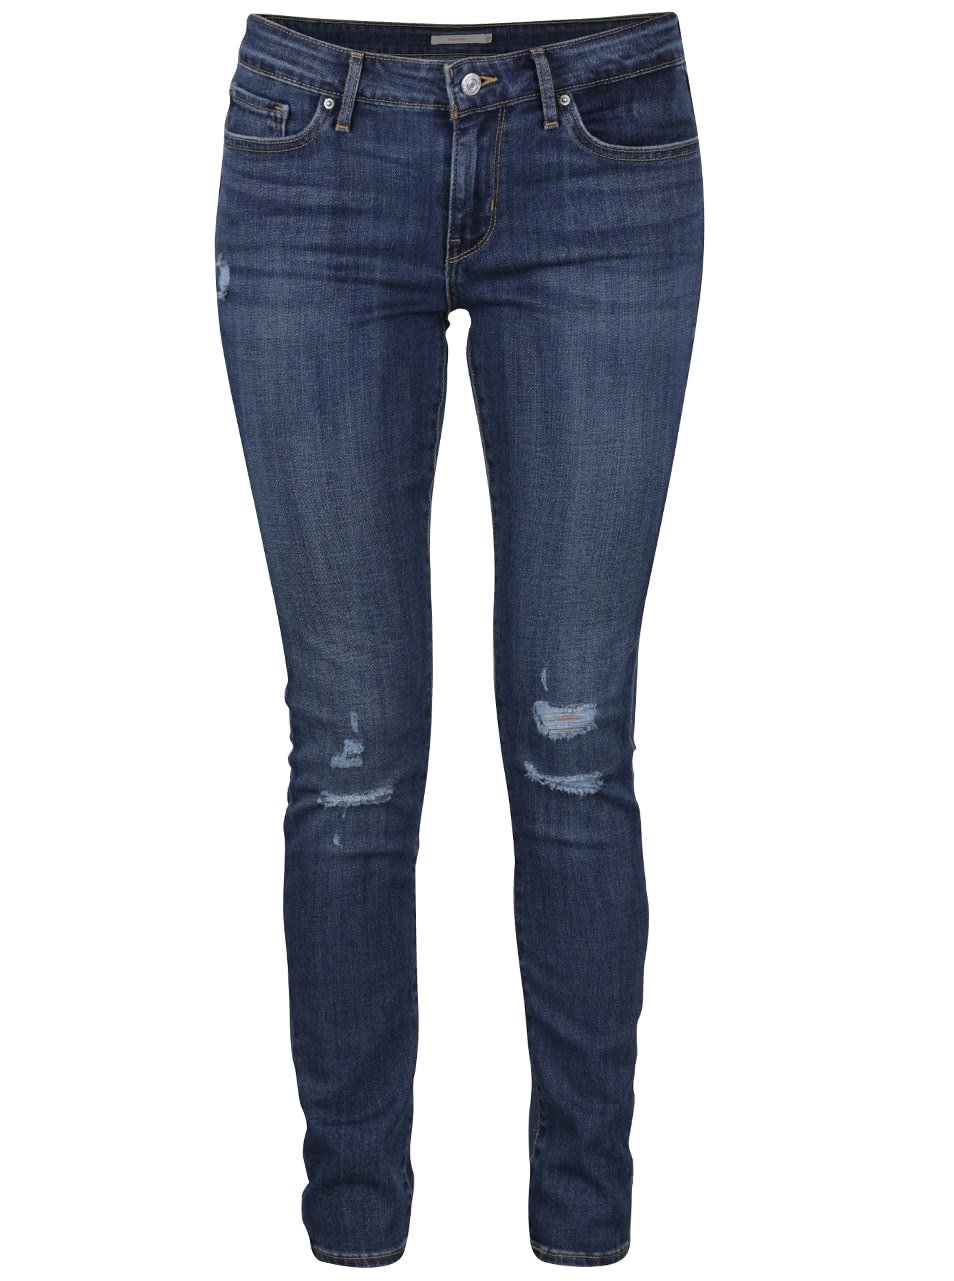 Tmavě modré dámské skinny džíny s potrhaným efektem Levi's® 711